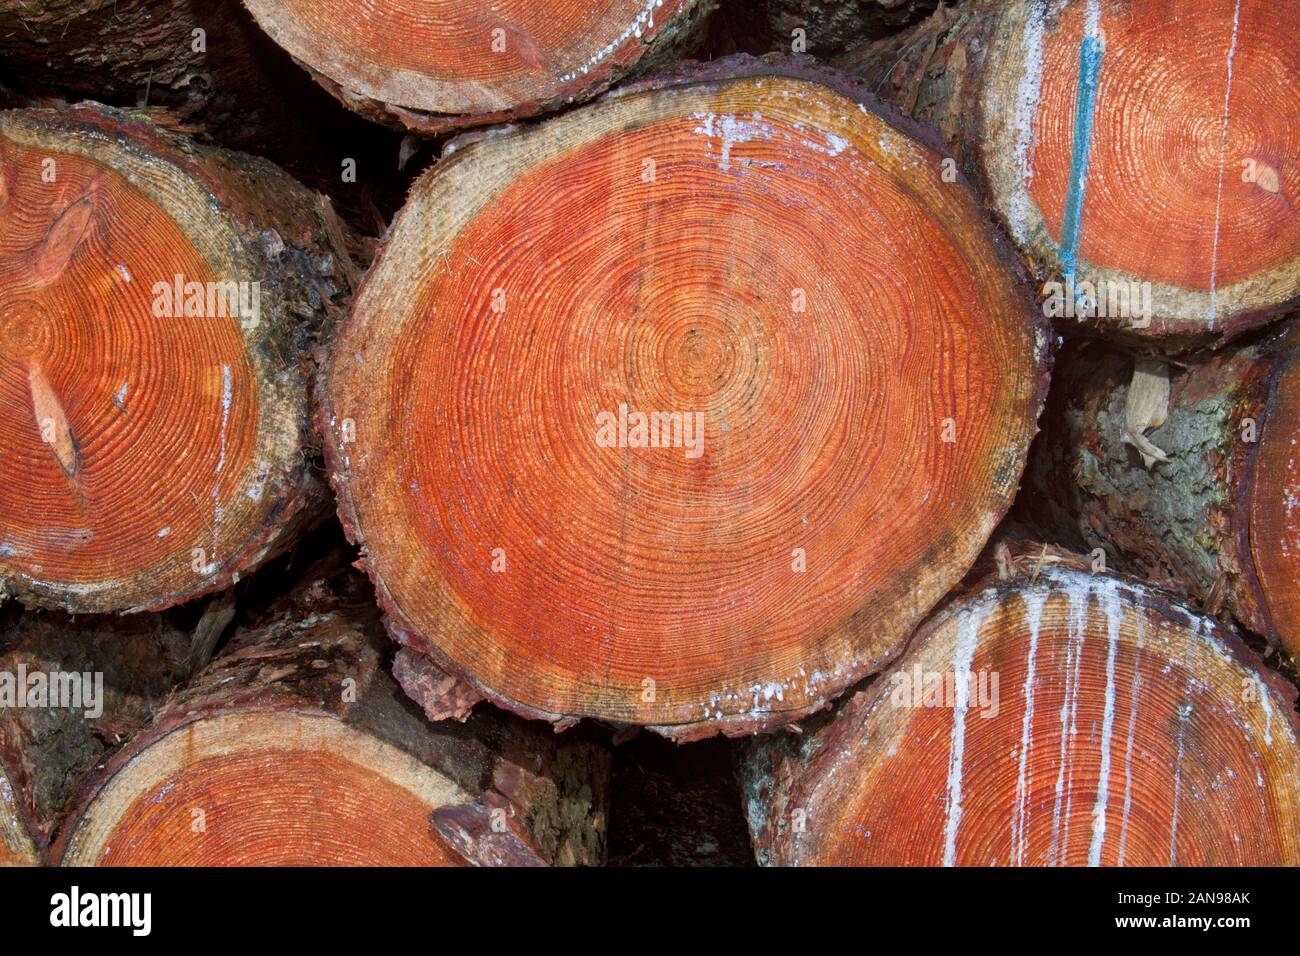 Tas de troncs d'arbre dans une forêt après la récolte Banque D'Images